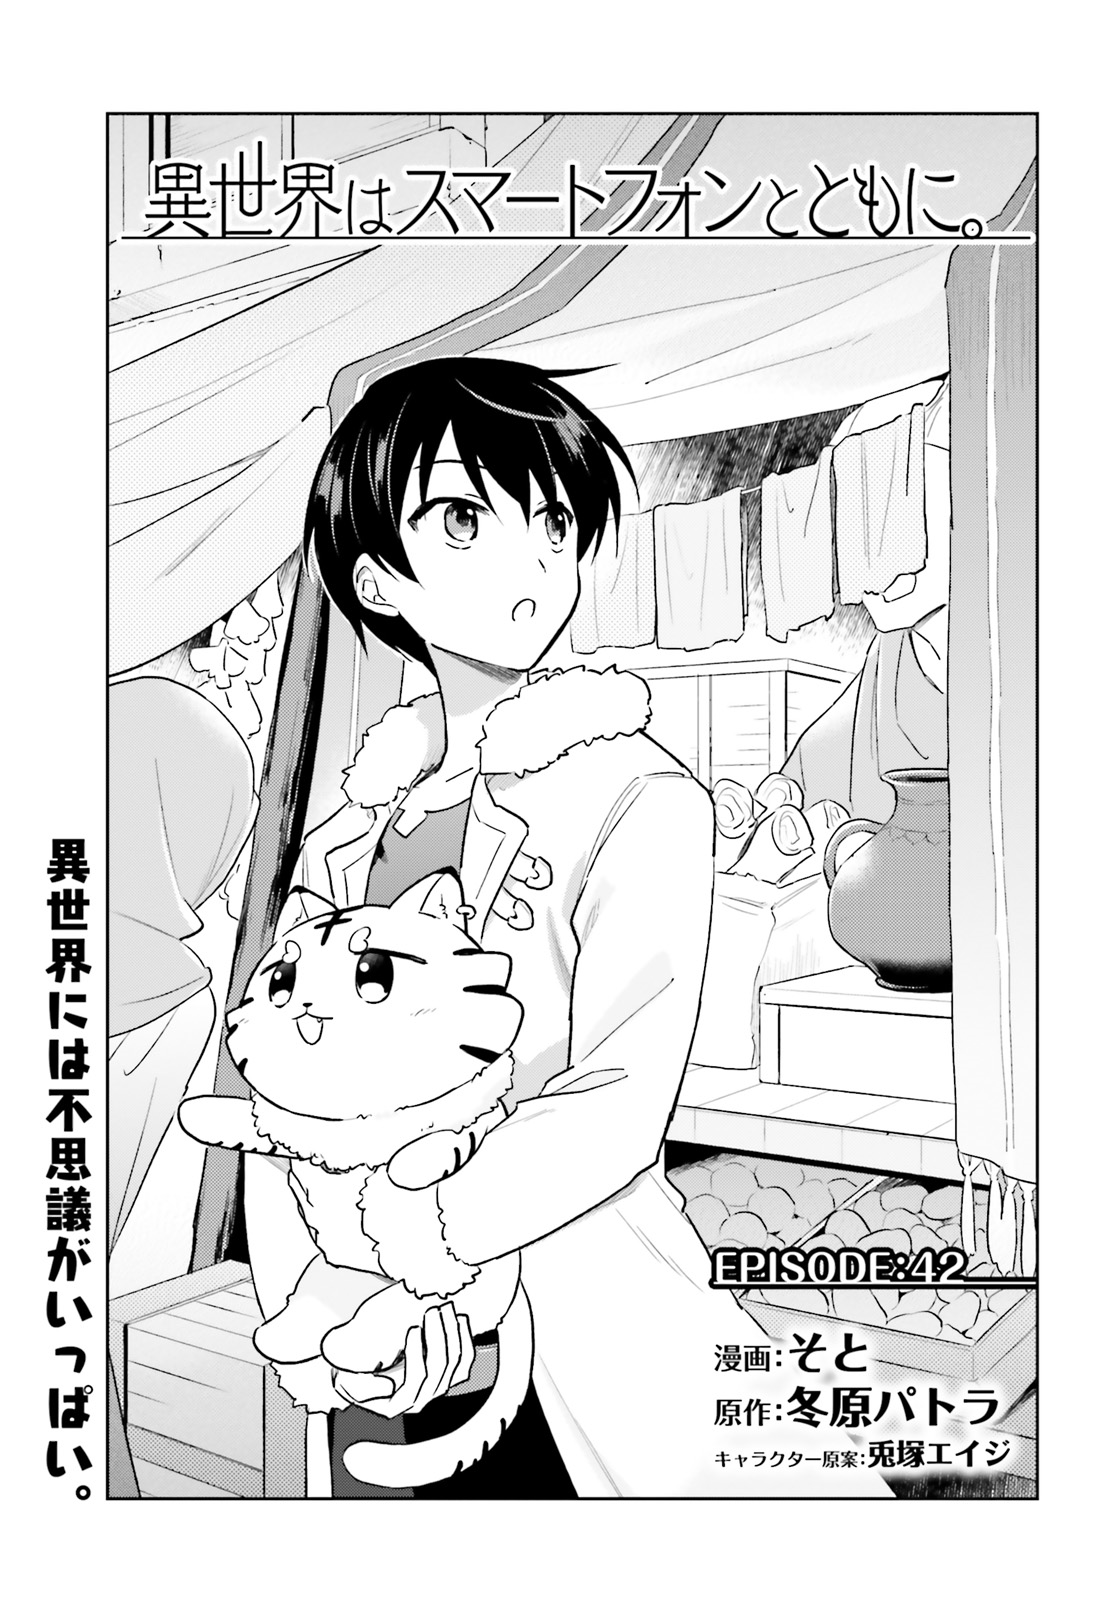 Isekai Shoukan wa Nidome desu Capítulo 19 - Manga Online